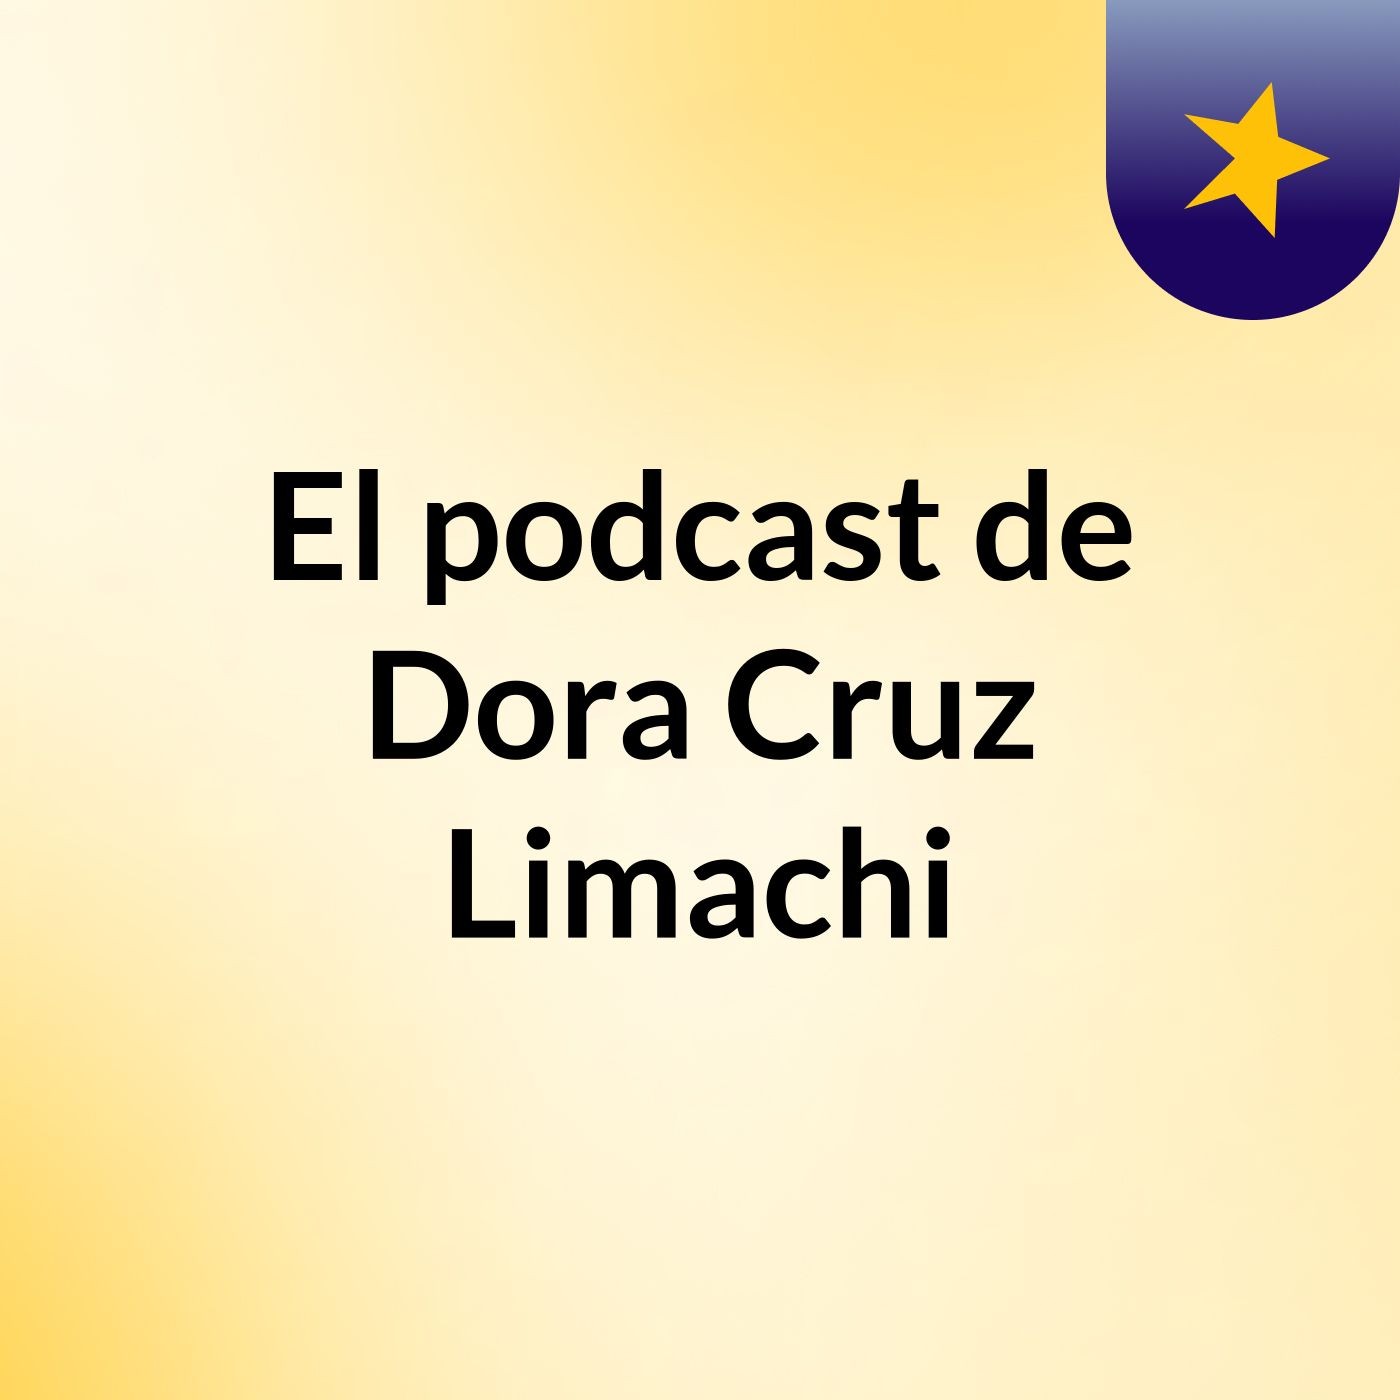 El podcast de Dora Cruz Limachi